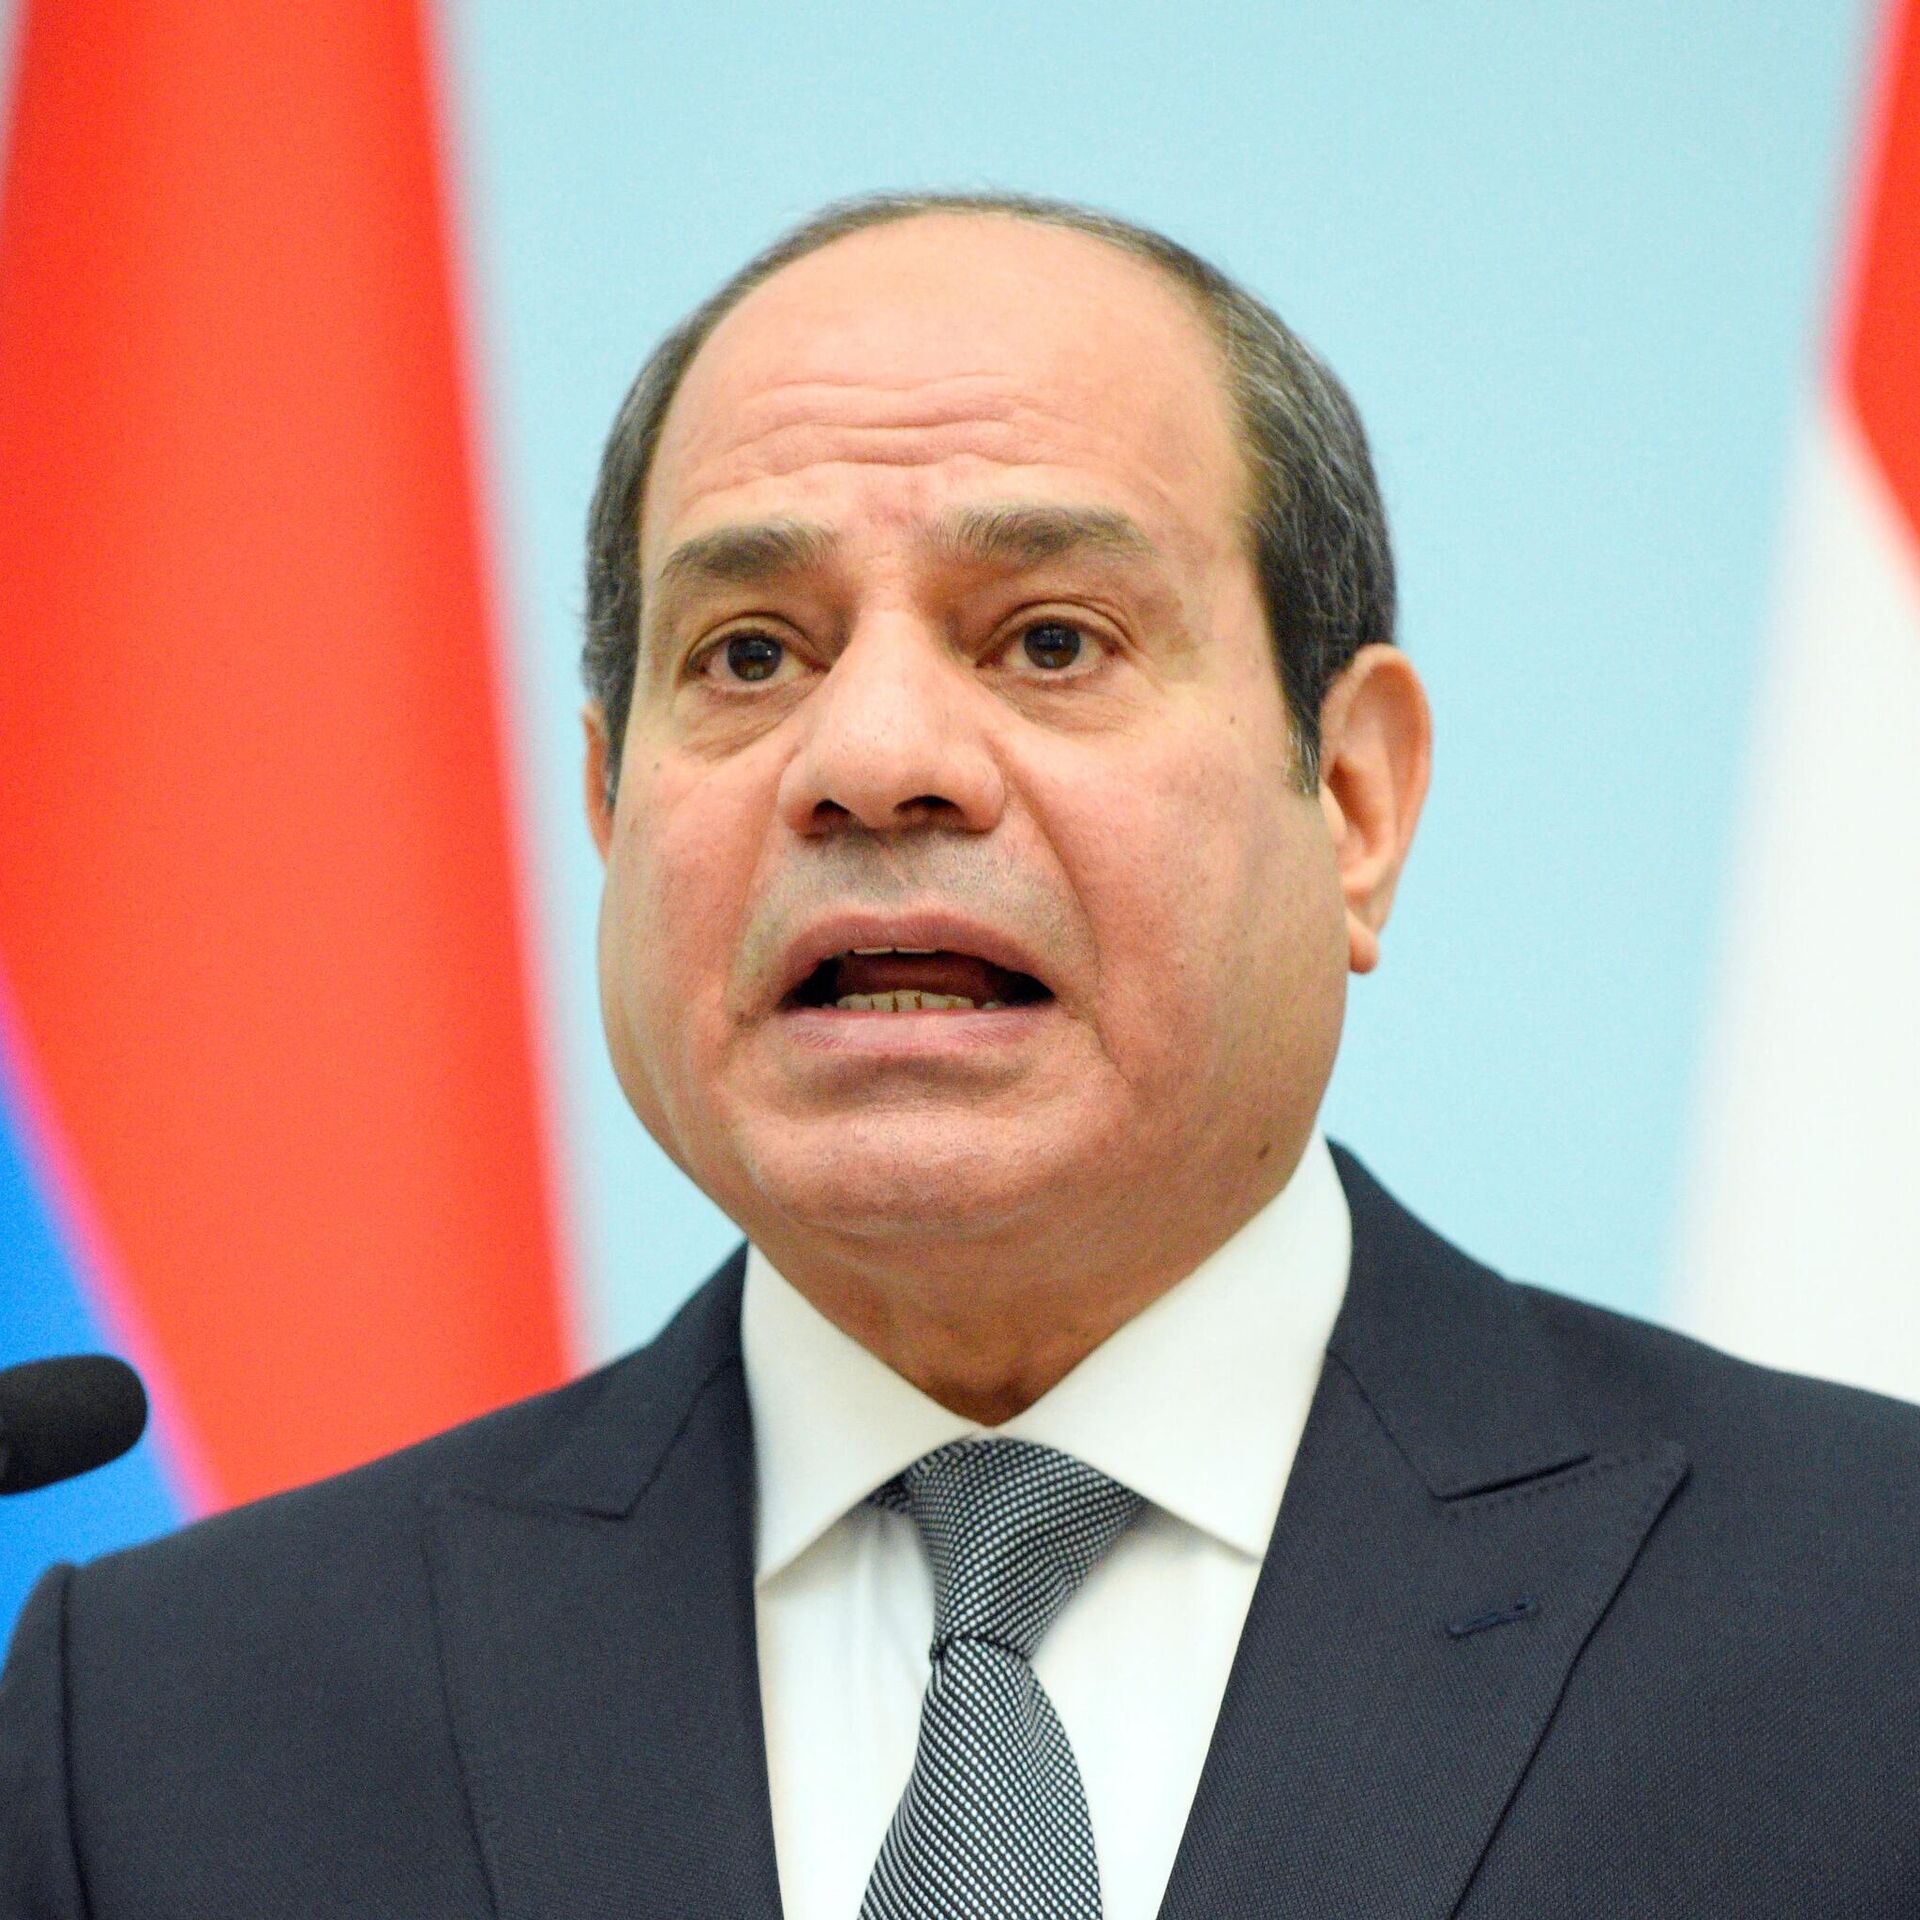 السيسي يلمح لإغراق مصر بالفوضى والمخدرات في حال الإطاحة به